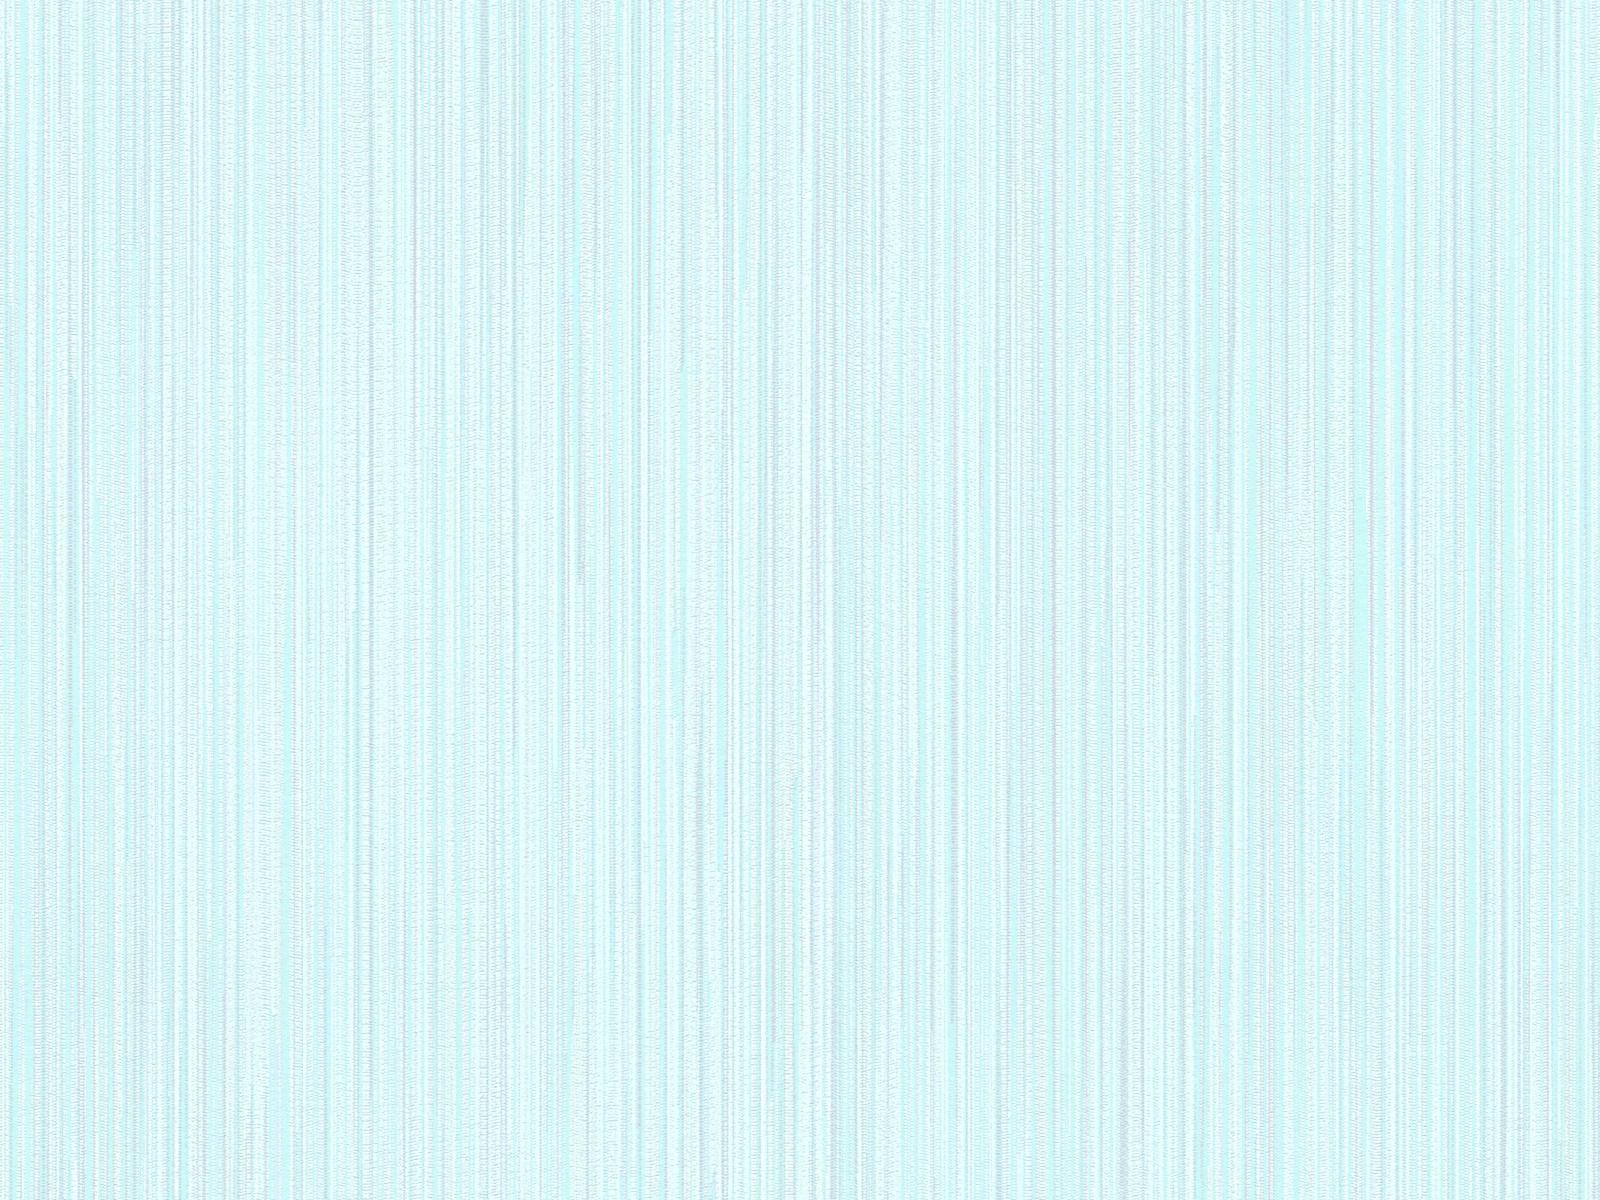 Vliesová tapeta modrej farby s pásikavou štruktúrou, ER-601610